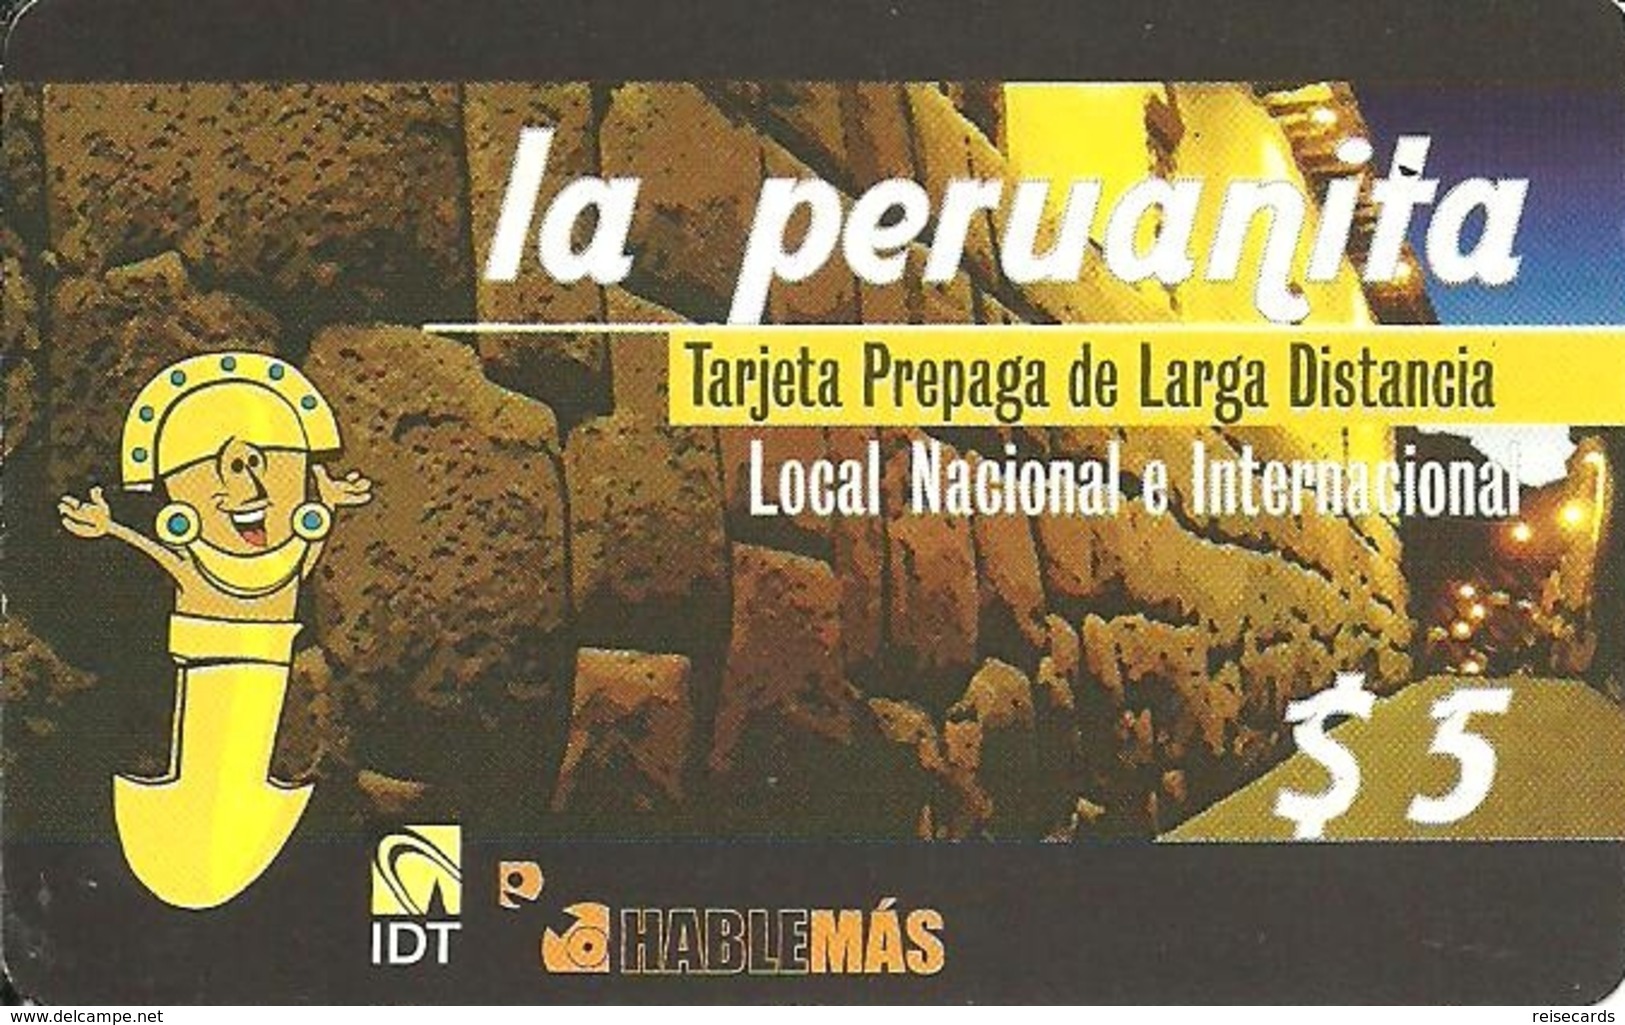 Argentina: Prepaid IDT La Peruanita 08.10, Producer Color-Graf - Argentina